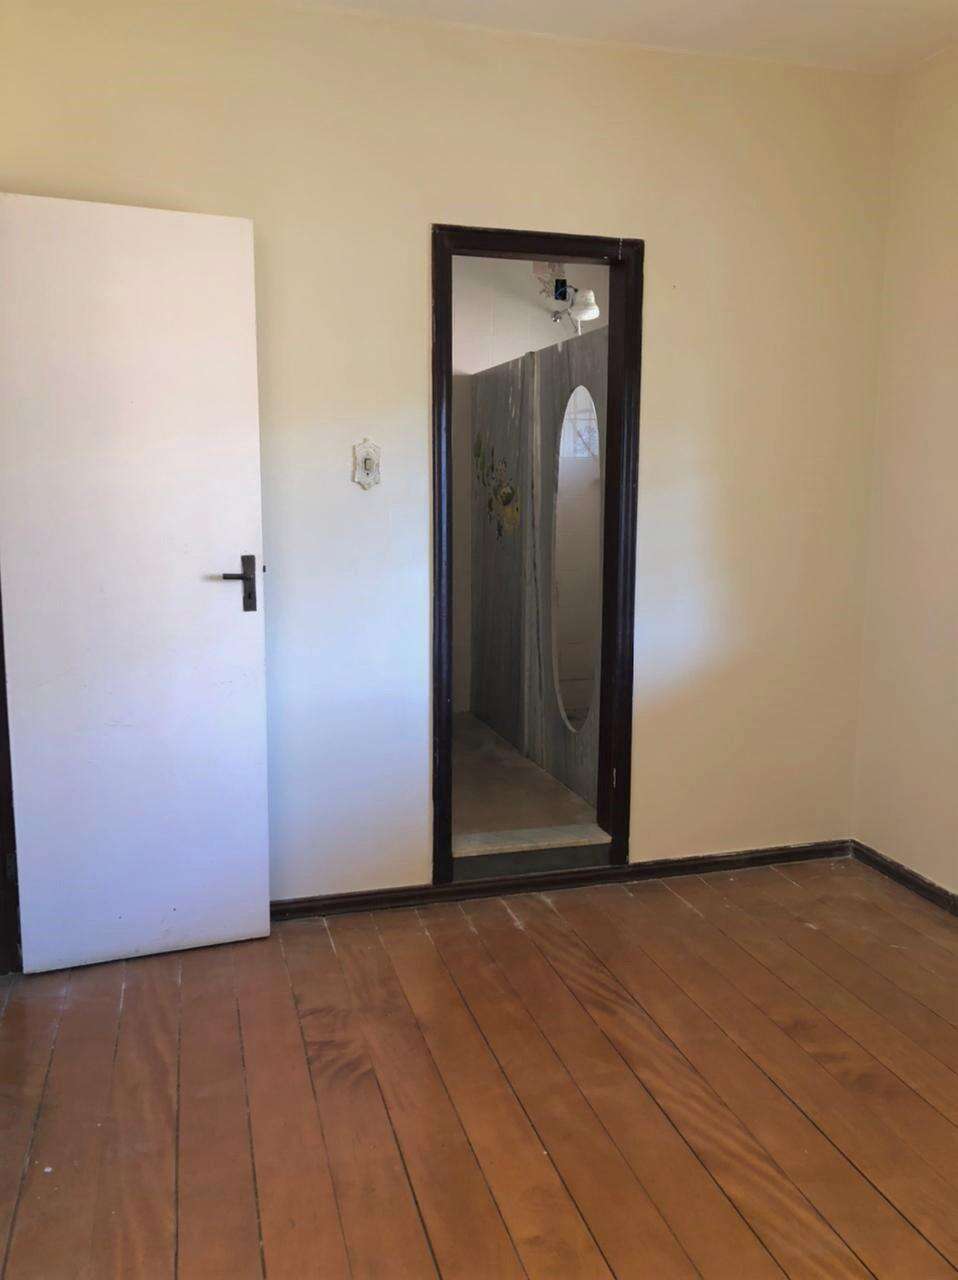 Apartamento 3 quartos à venda no Limoeiro: bb3842b4-3-whatsapp-image-2021-06-18-at-16.32.52-1.jpeg